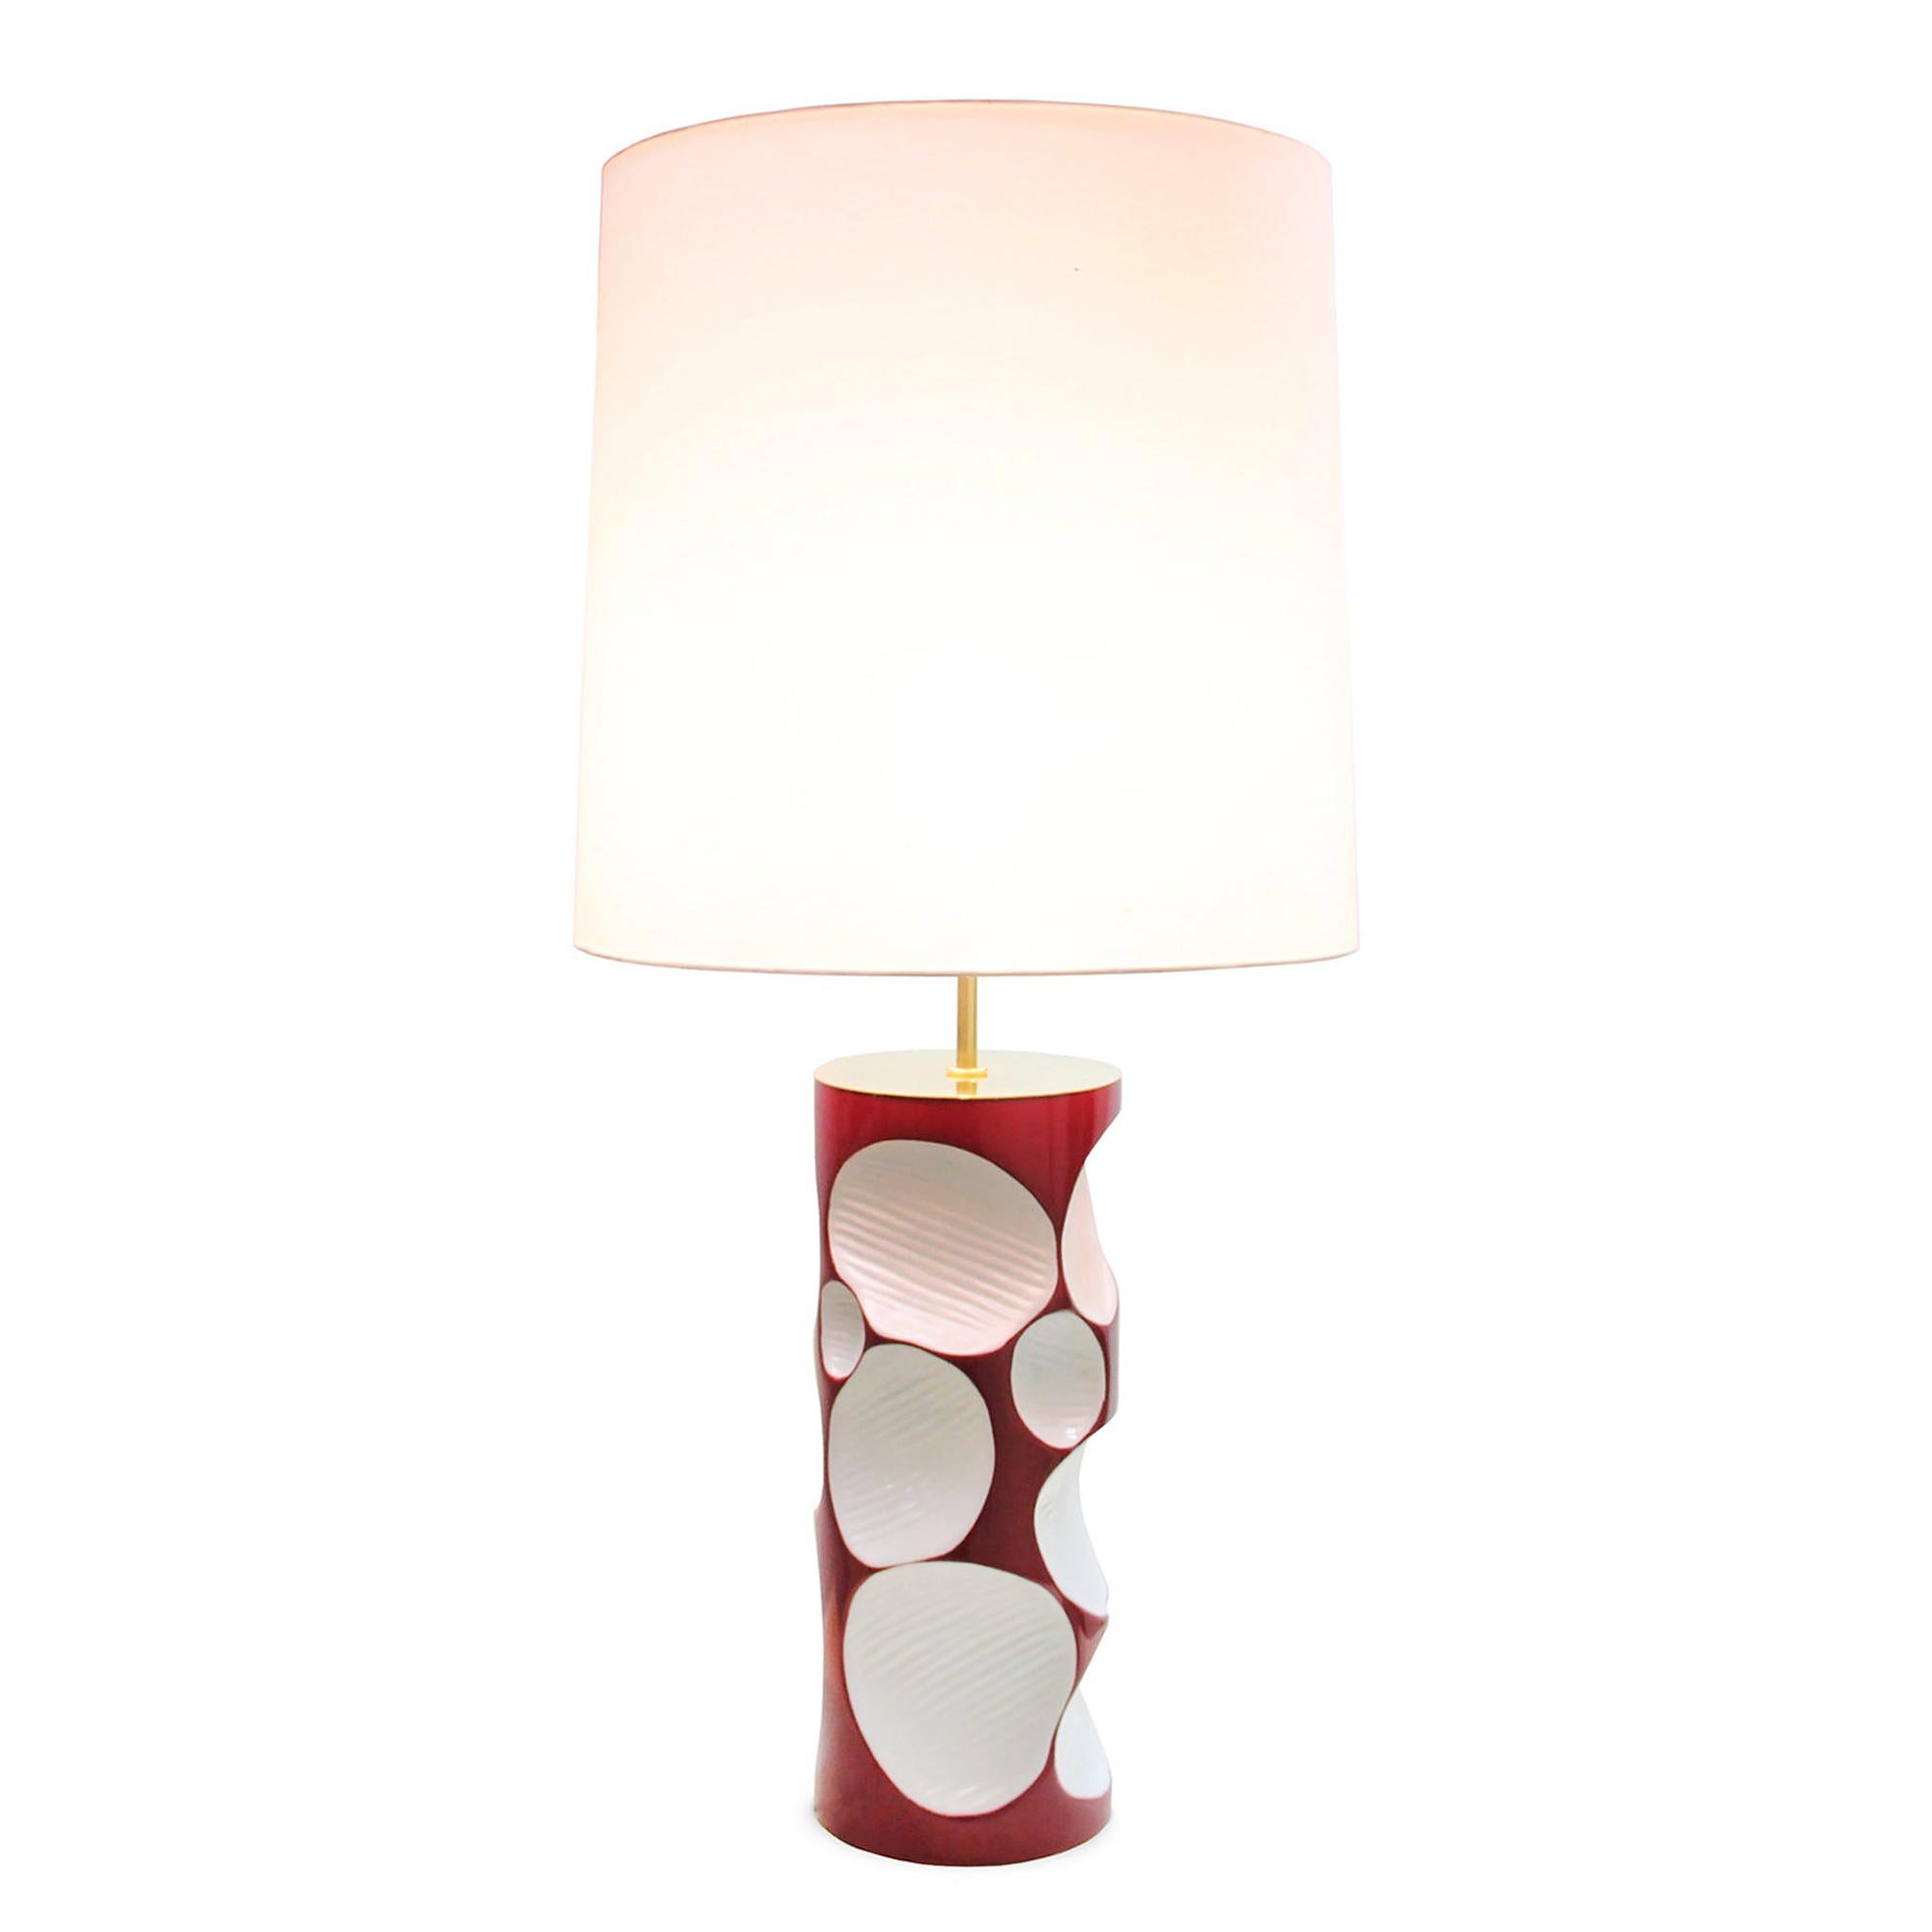 Lampe de table Allia avec structure en fibre de verre
en finition laquée rouge. Avec le sommet de la base en 
laiton poli. Avec abat-jour en satin blanc inclus.
1 ampoule, douille type E27, max 40 watts.
Ampoule non incluse.
     